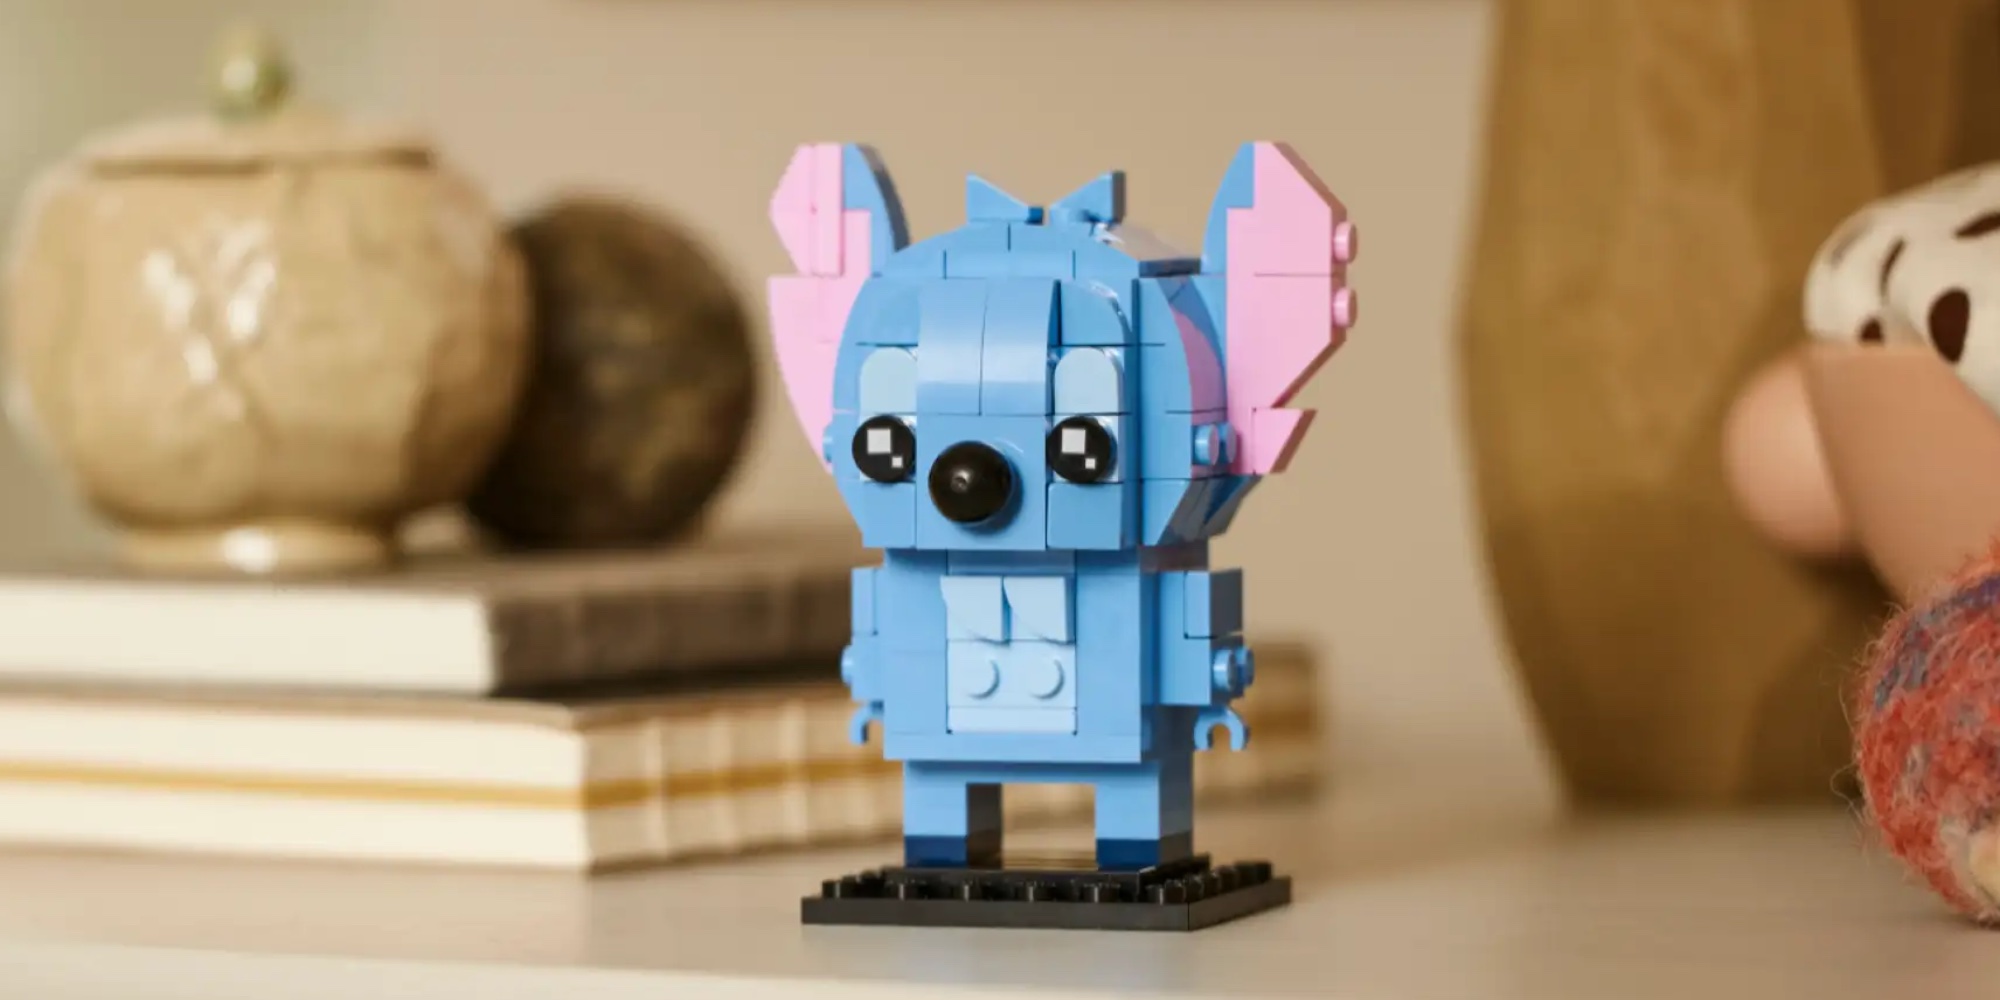 LEGO IDEAS - BrickHeadz Stitch!